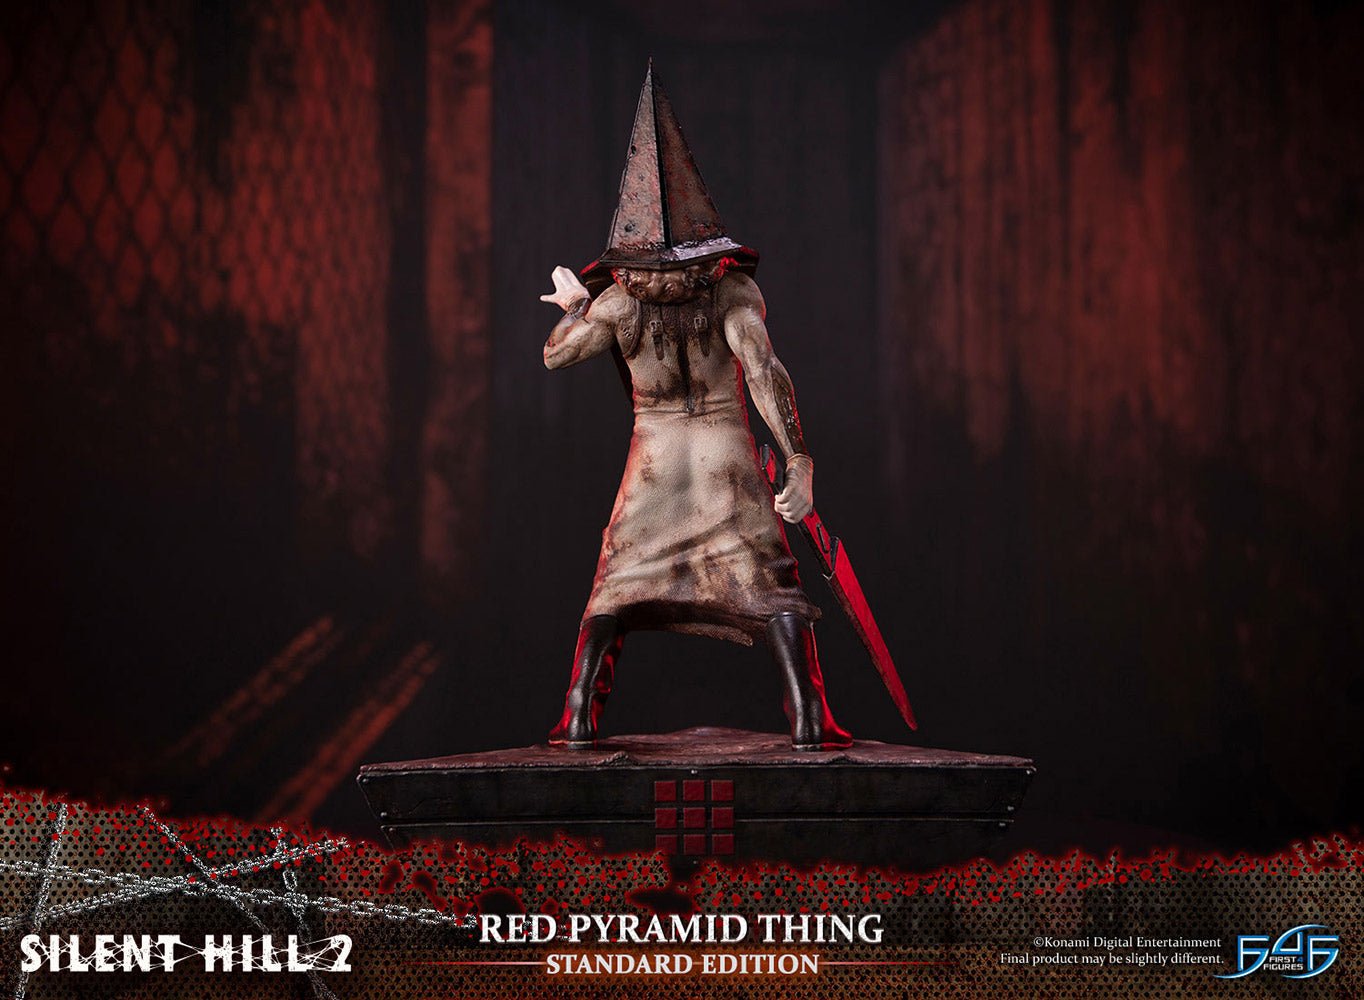 Silent Hill 2 Pyramid Head Gecco Statue Pre-Orders Open - Siliconera